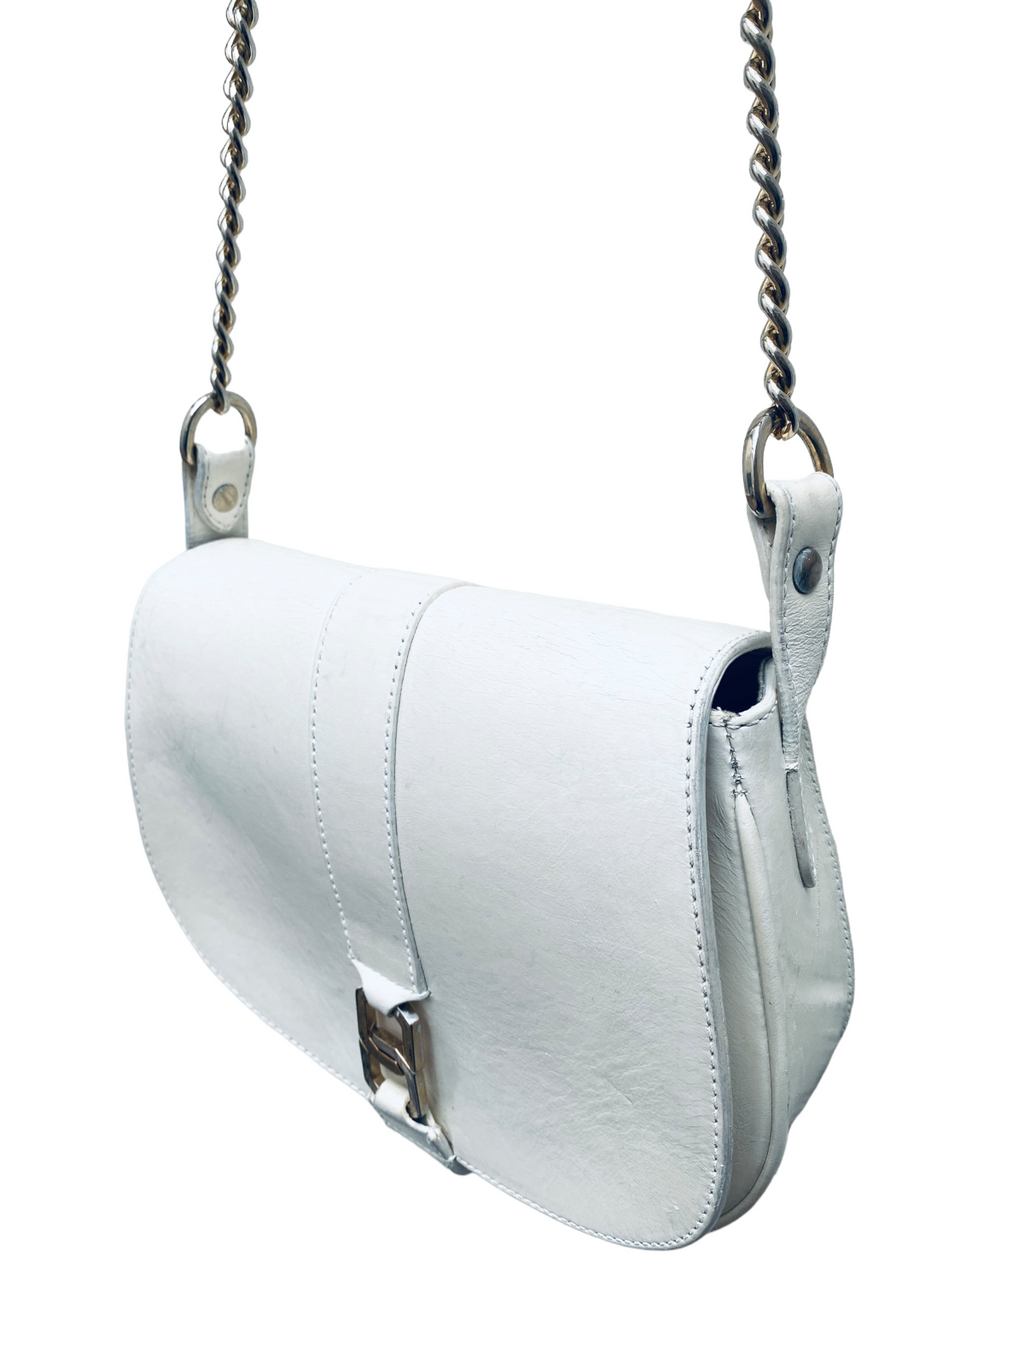 White Leather Shoulder Bag Handbag  Gold Color Chain